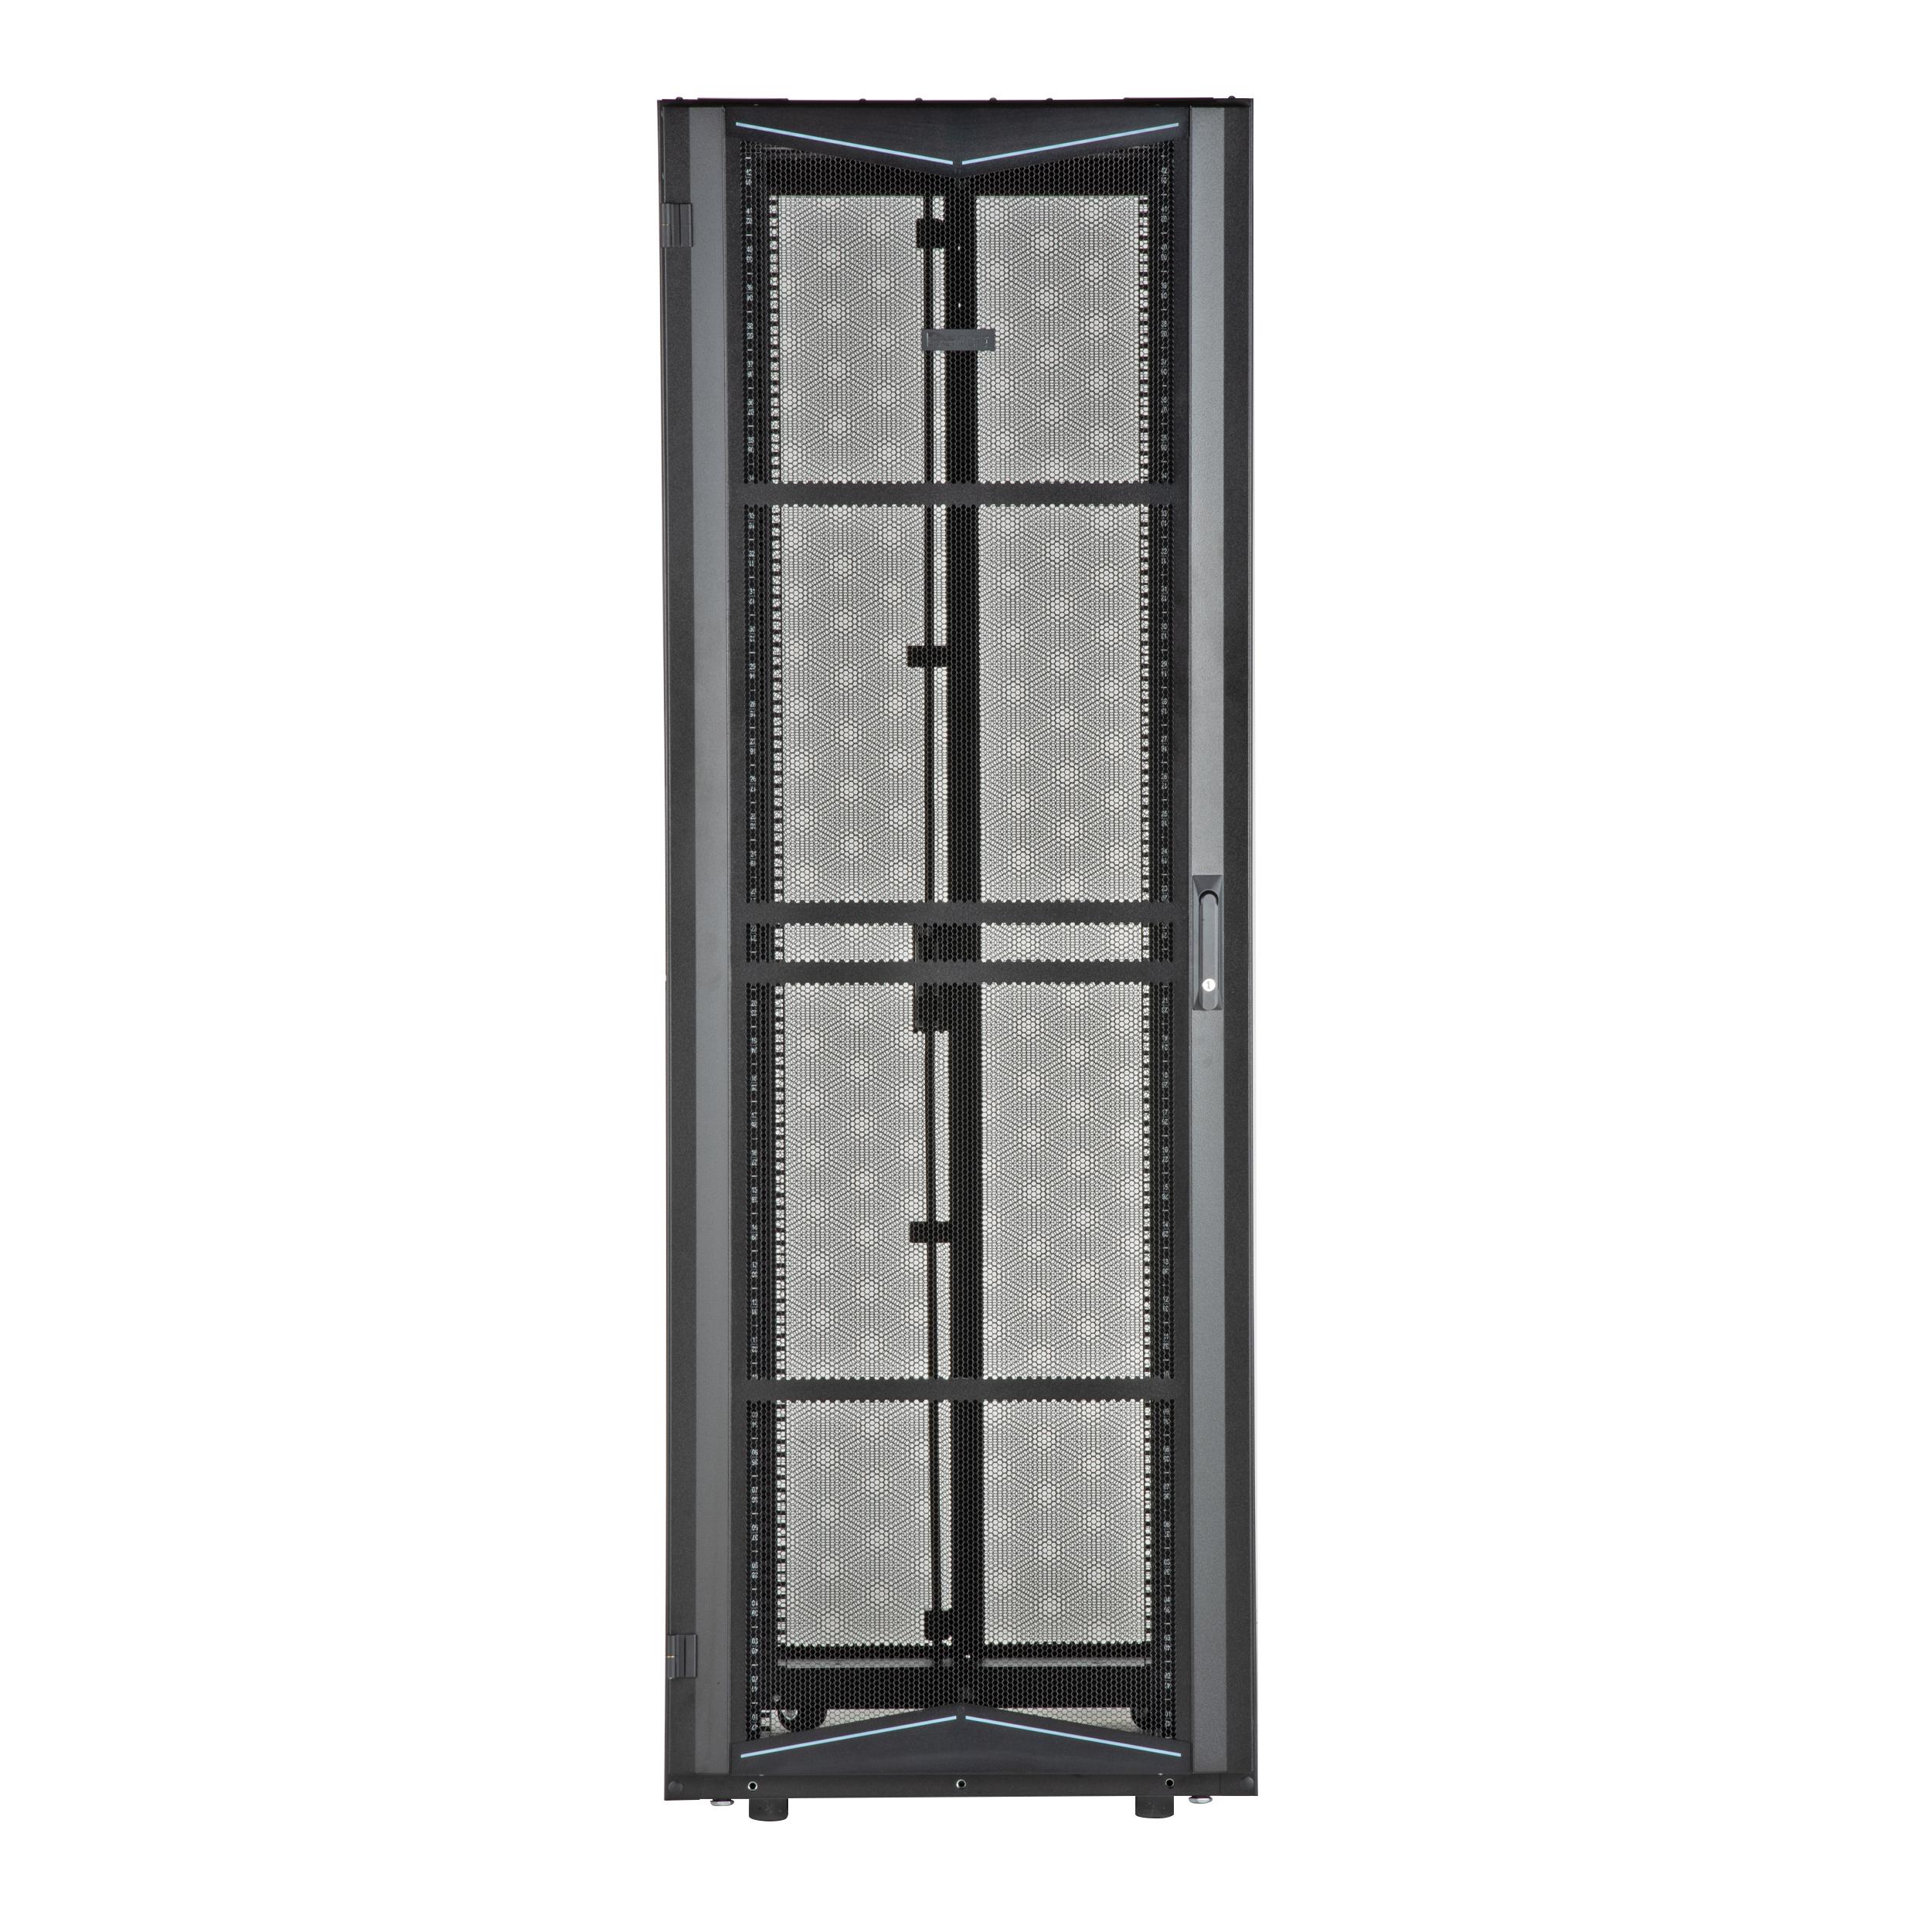 Panduit XG74222BS0001 FlexFusion Cabinet, 700mm x 42RU x 1200mm, Black